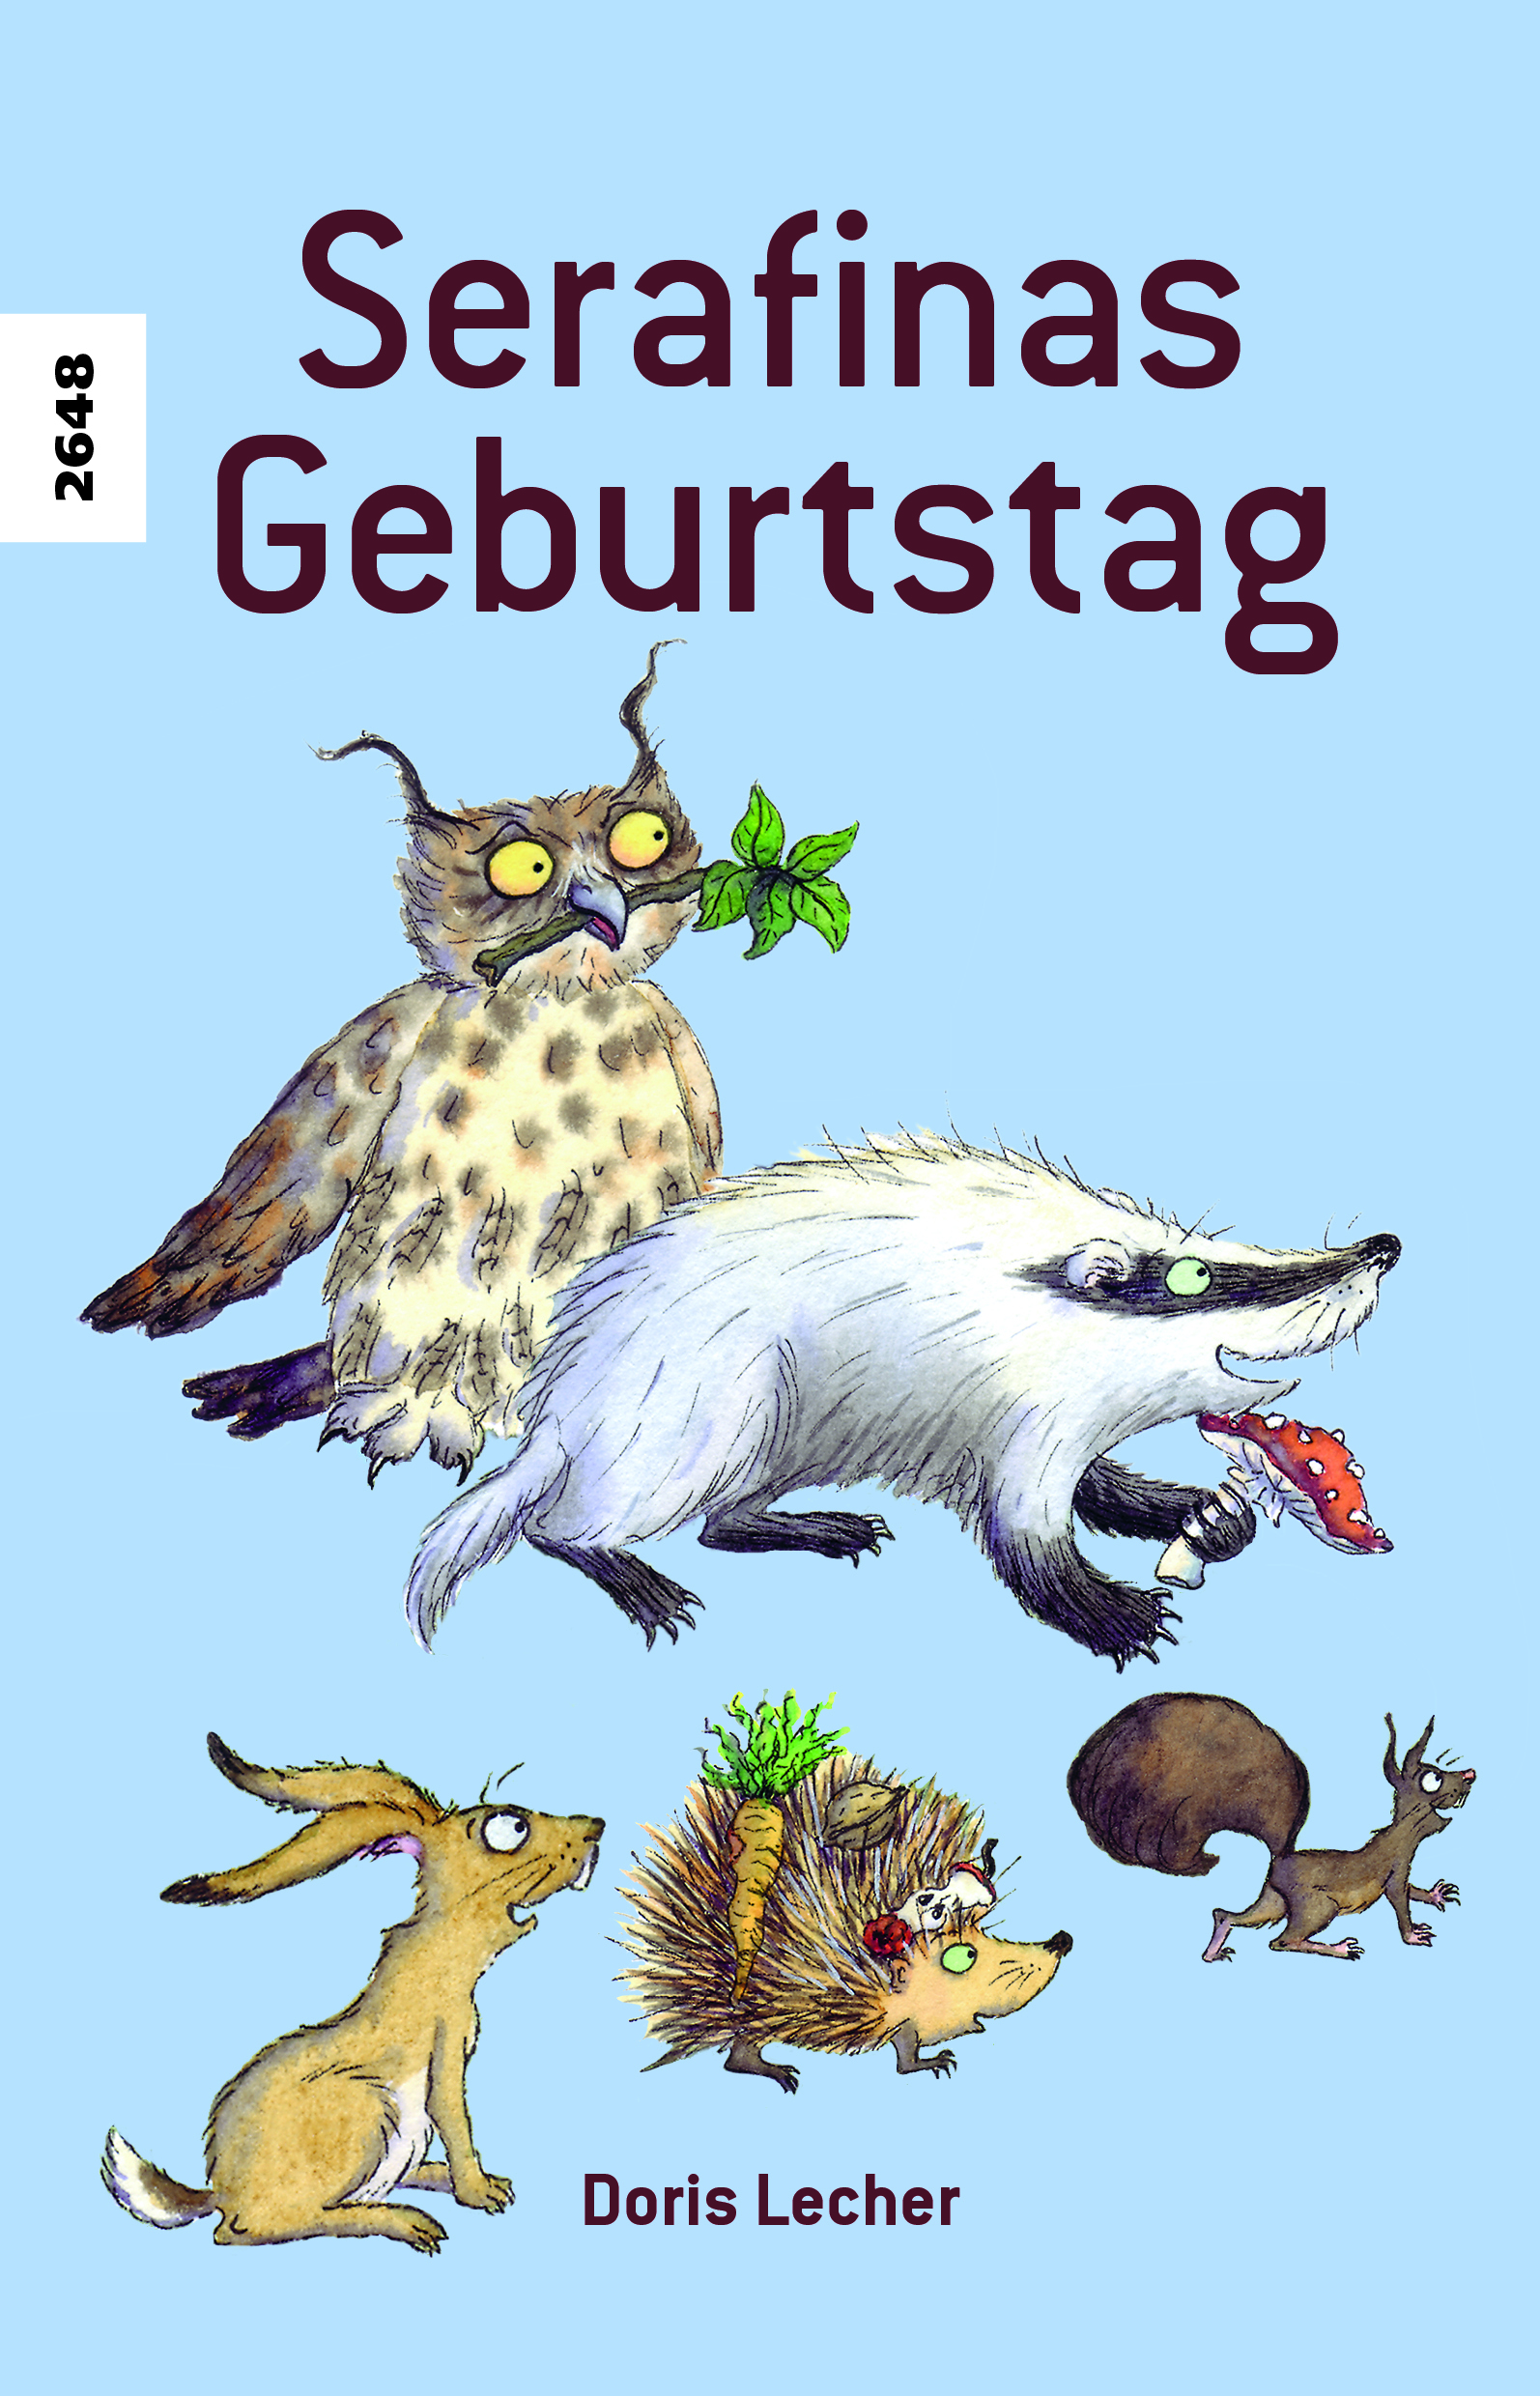 Serafinas Geburtstag, ein Kinderbuch von Doris Lecher, SJW Verlag, Tiergeschichte mit Bastelbogen